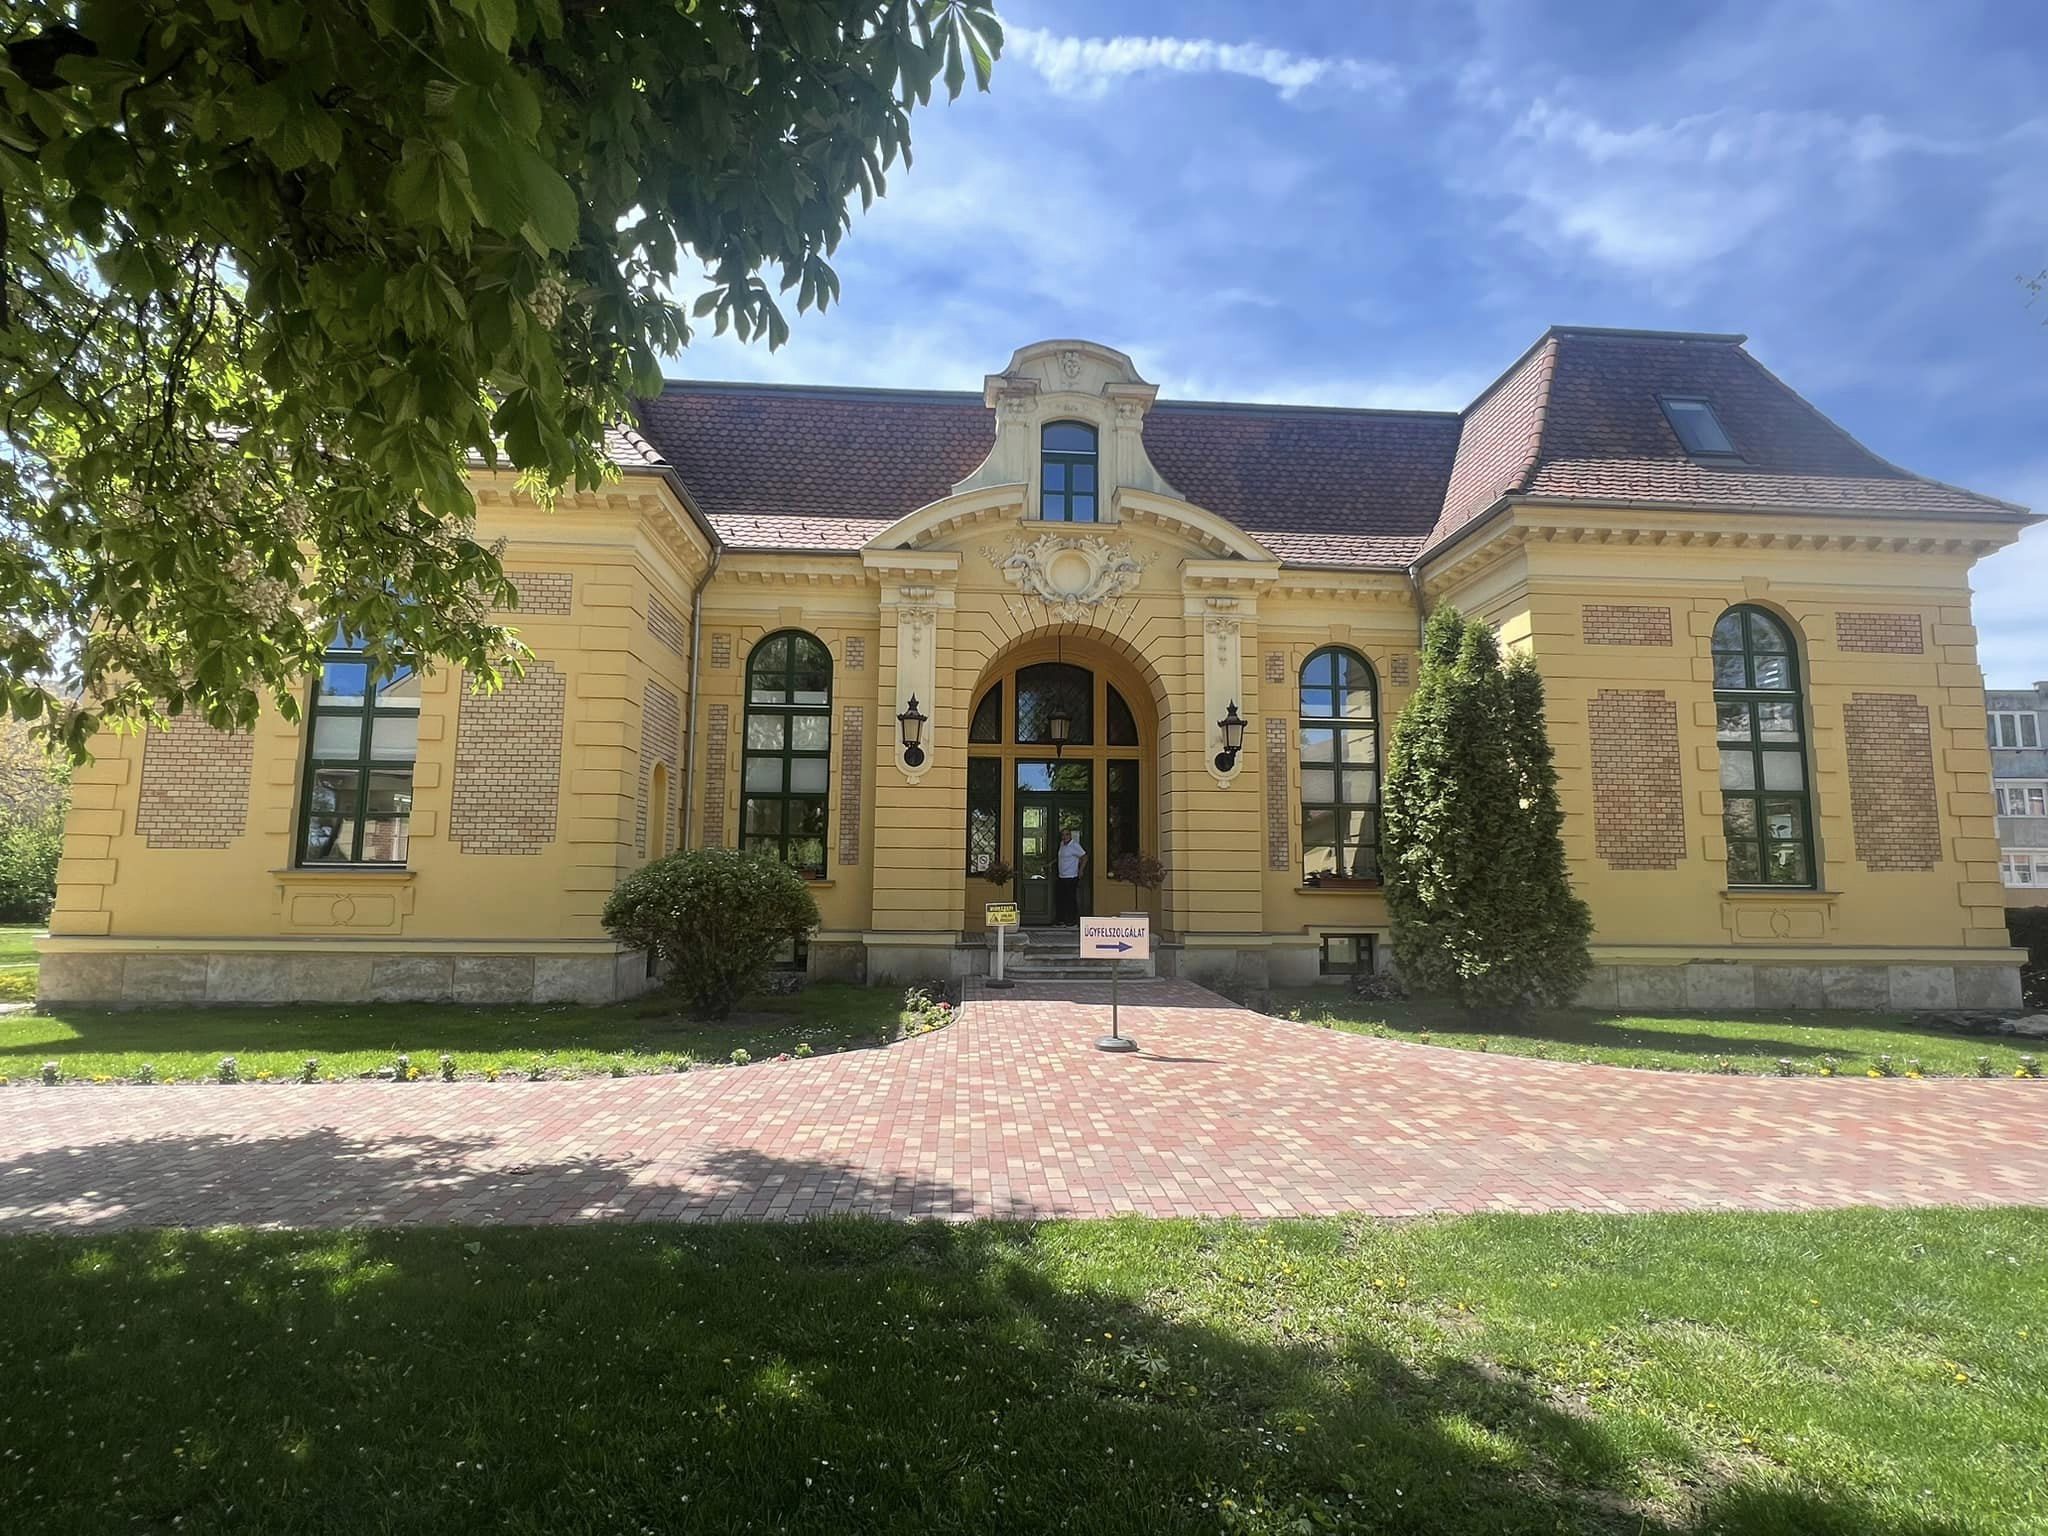 Château de Malonyai